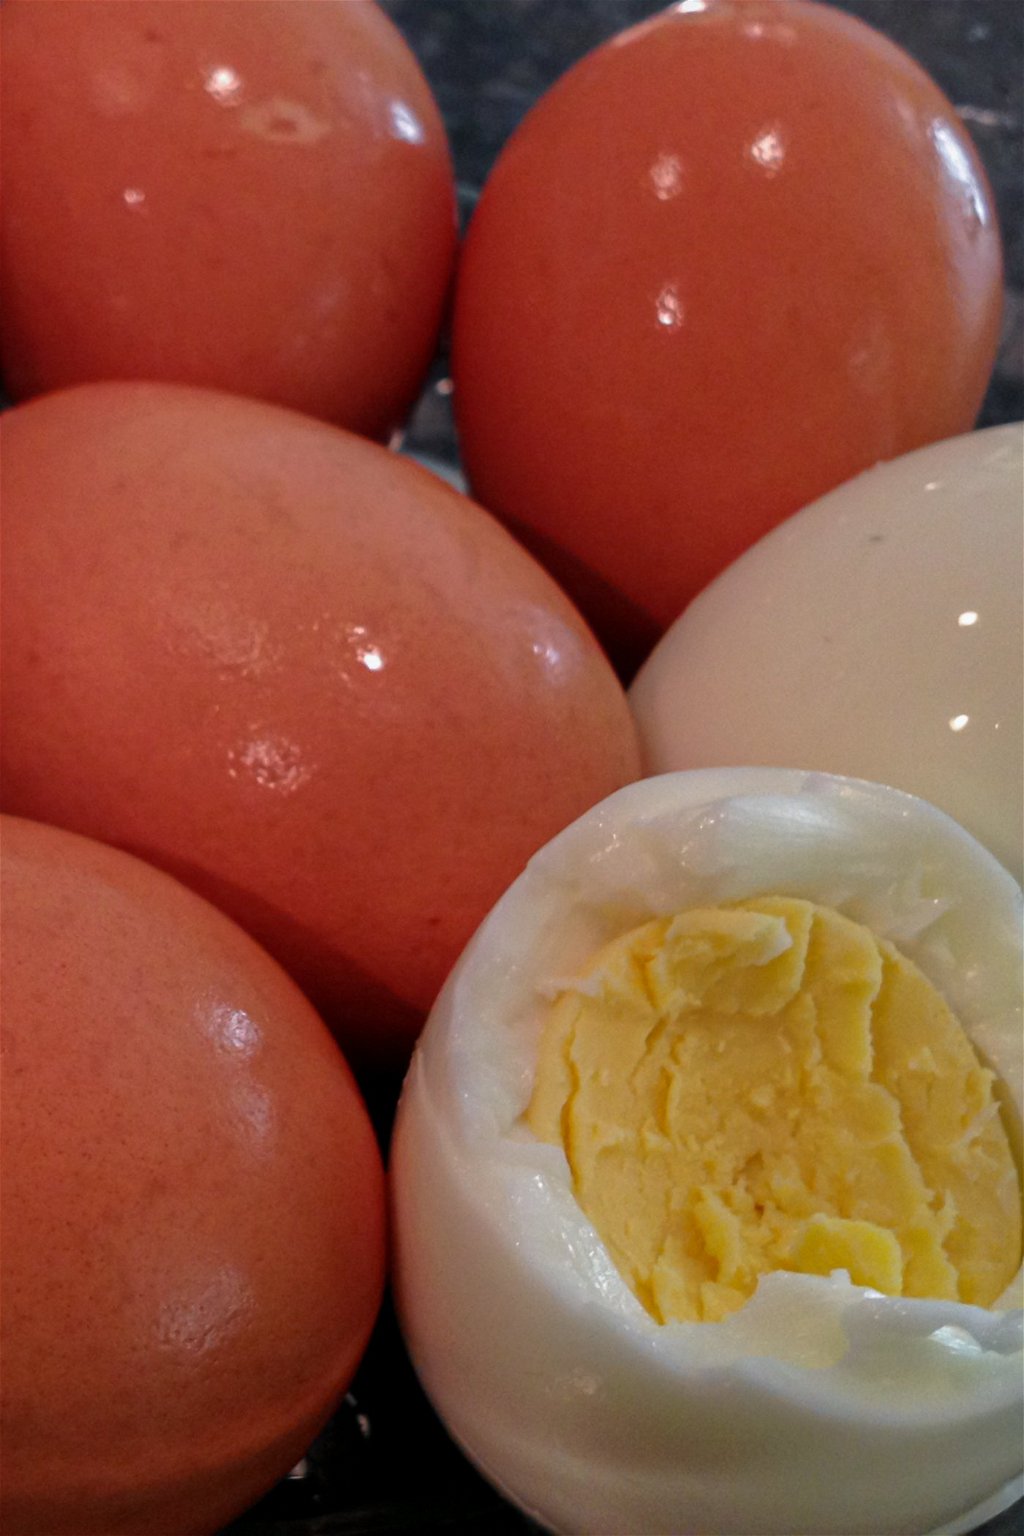 https://media.theproteinchef.co/wp-content/uploads/2020/03/Easy-Hard-Boiled-Eggs-Recipe.jpg